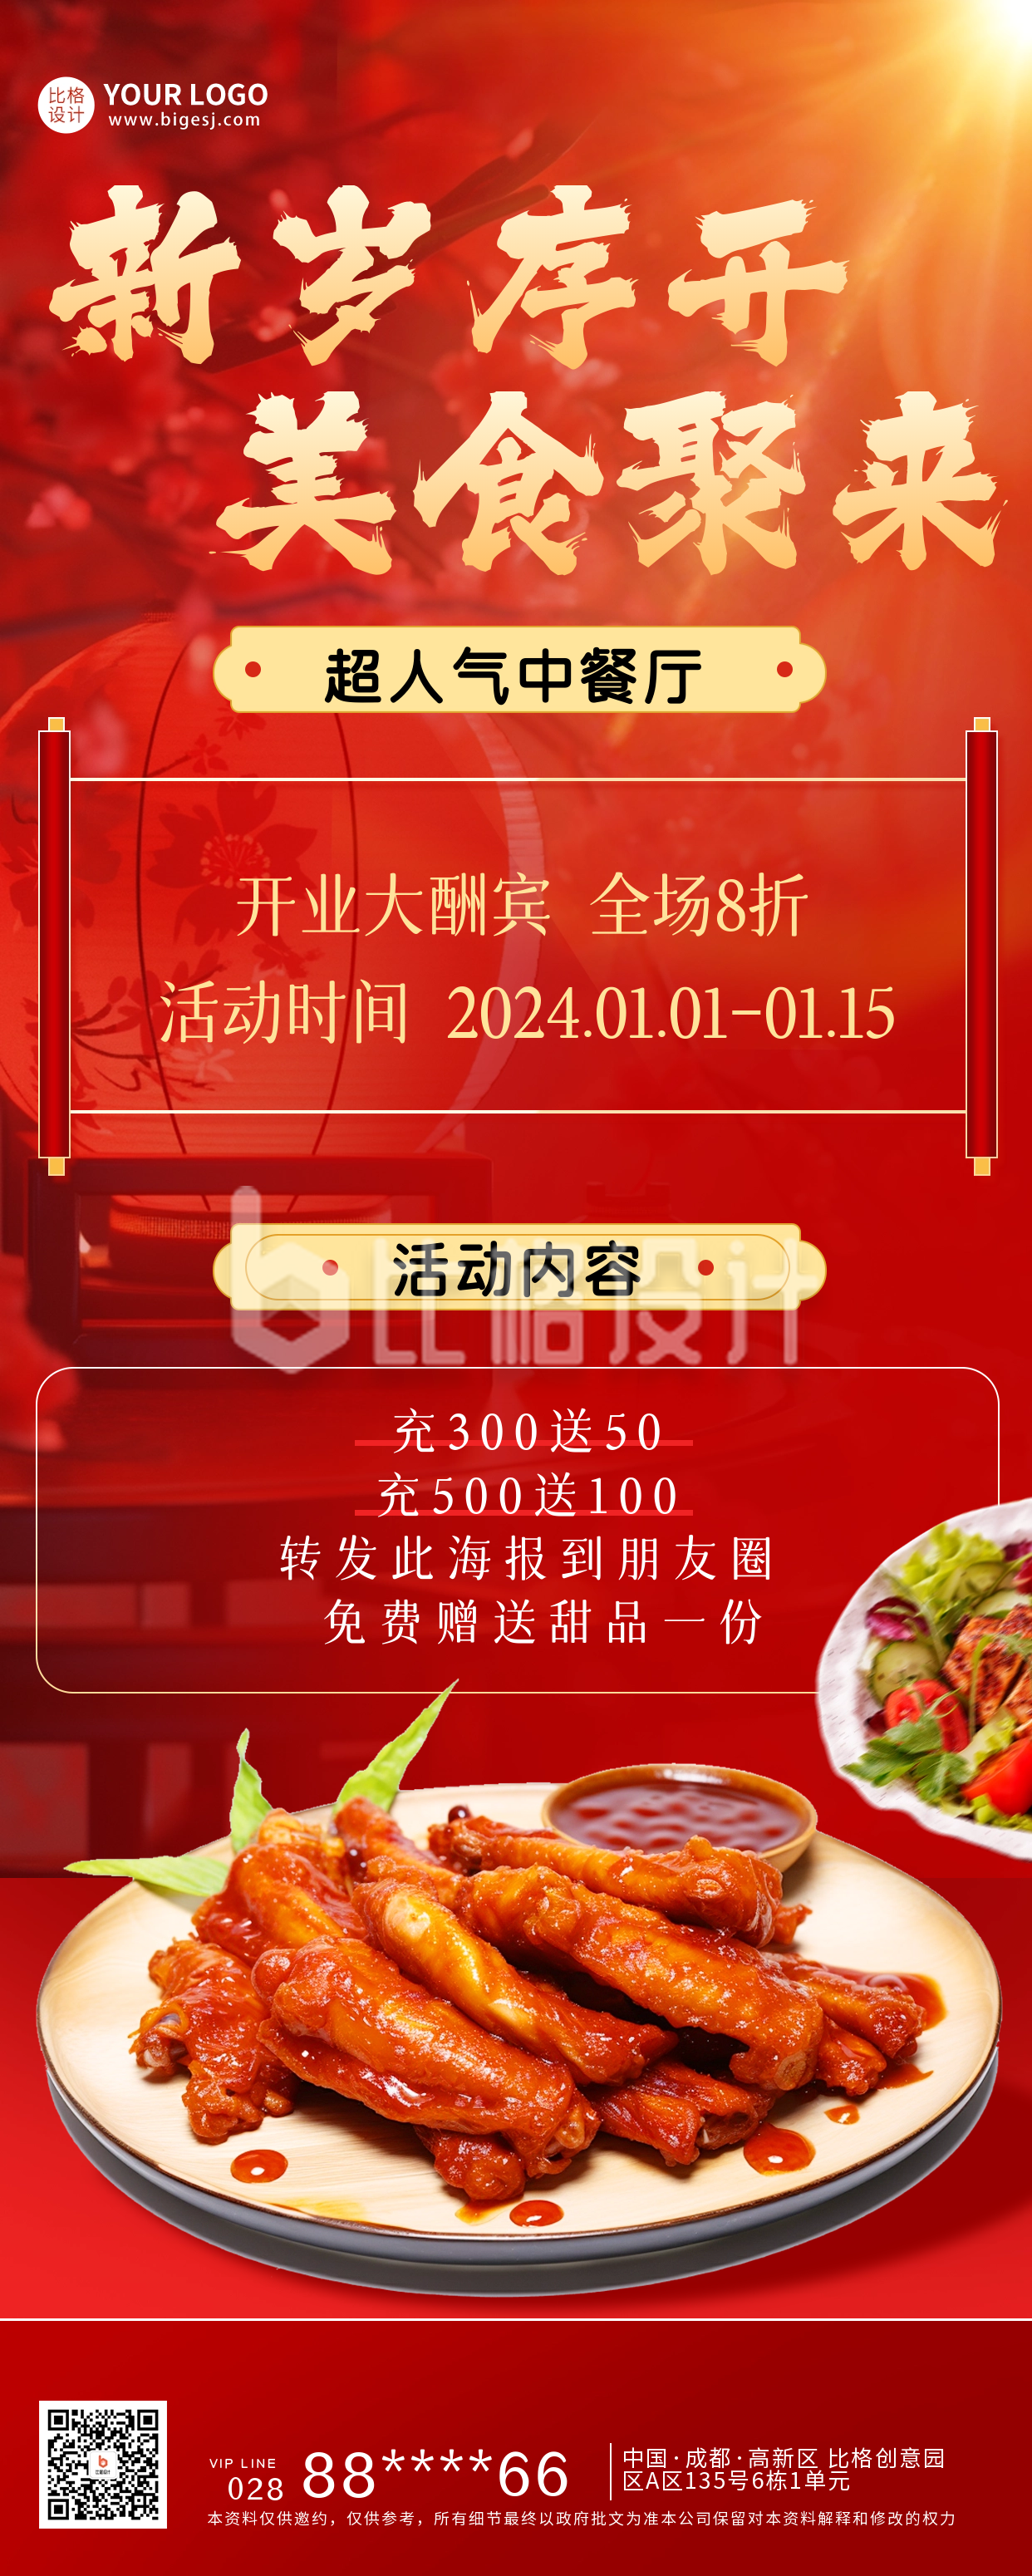 中餐厅开业美食优惠宣传长图海报